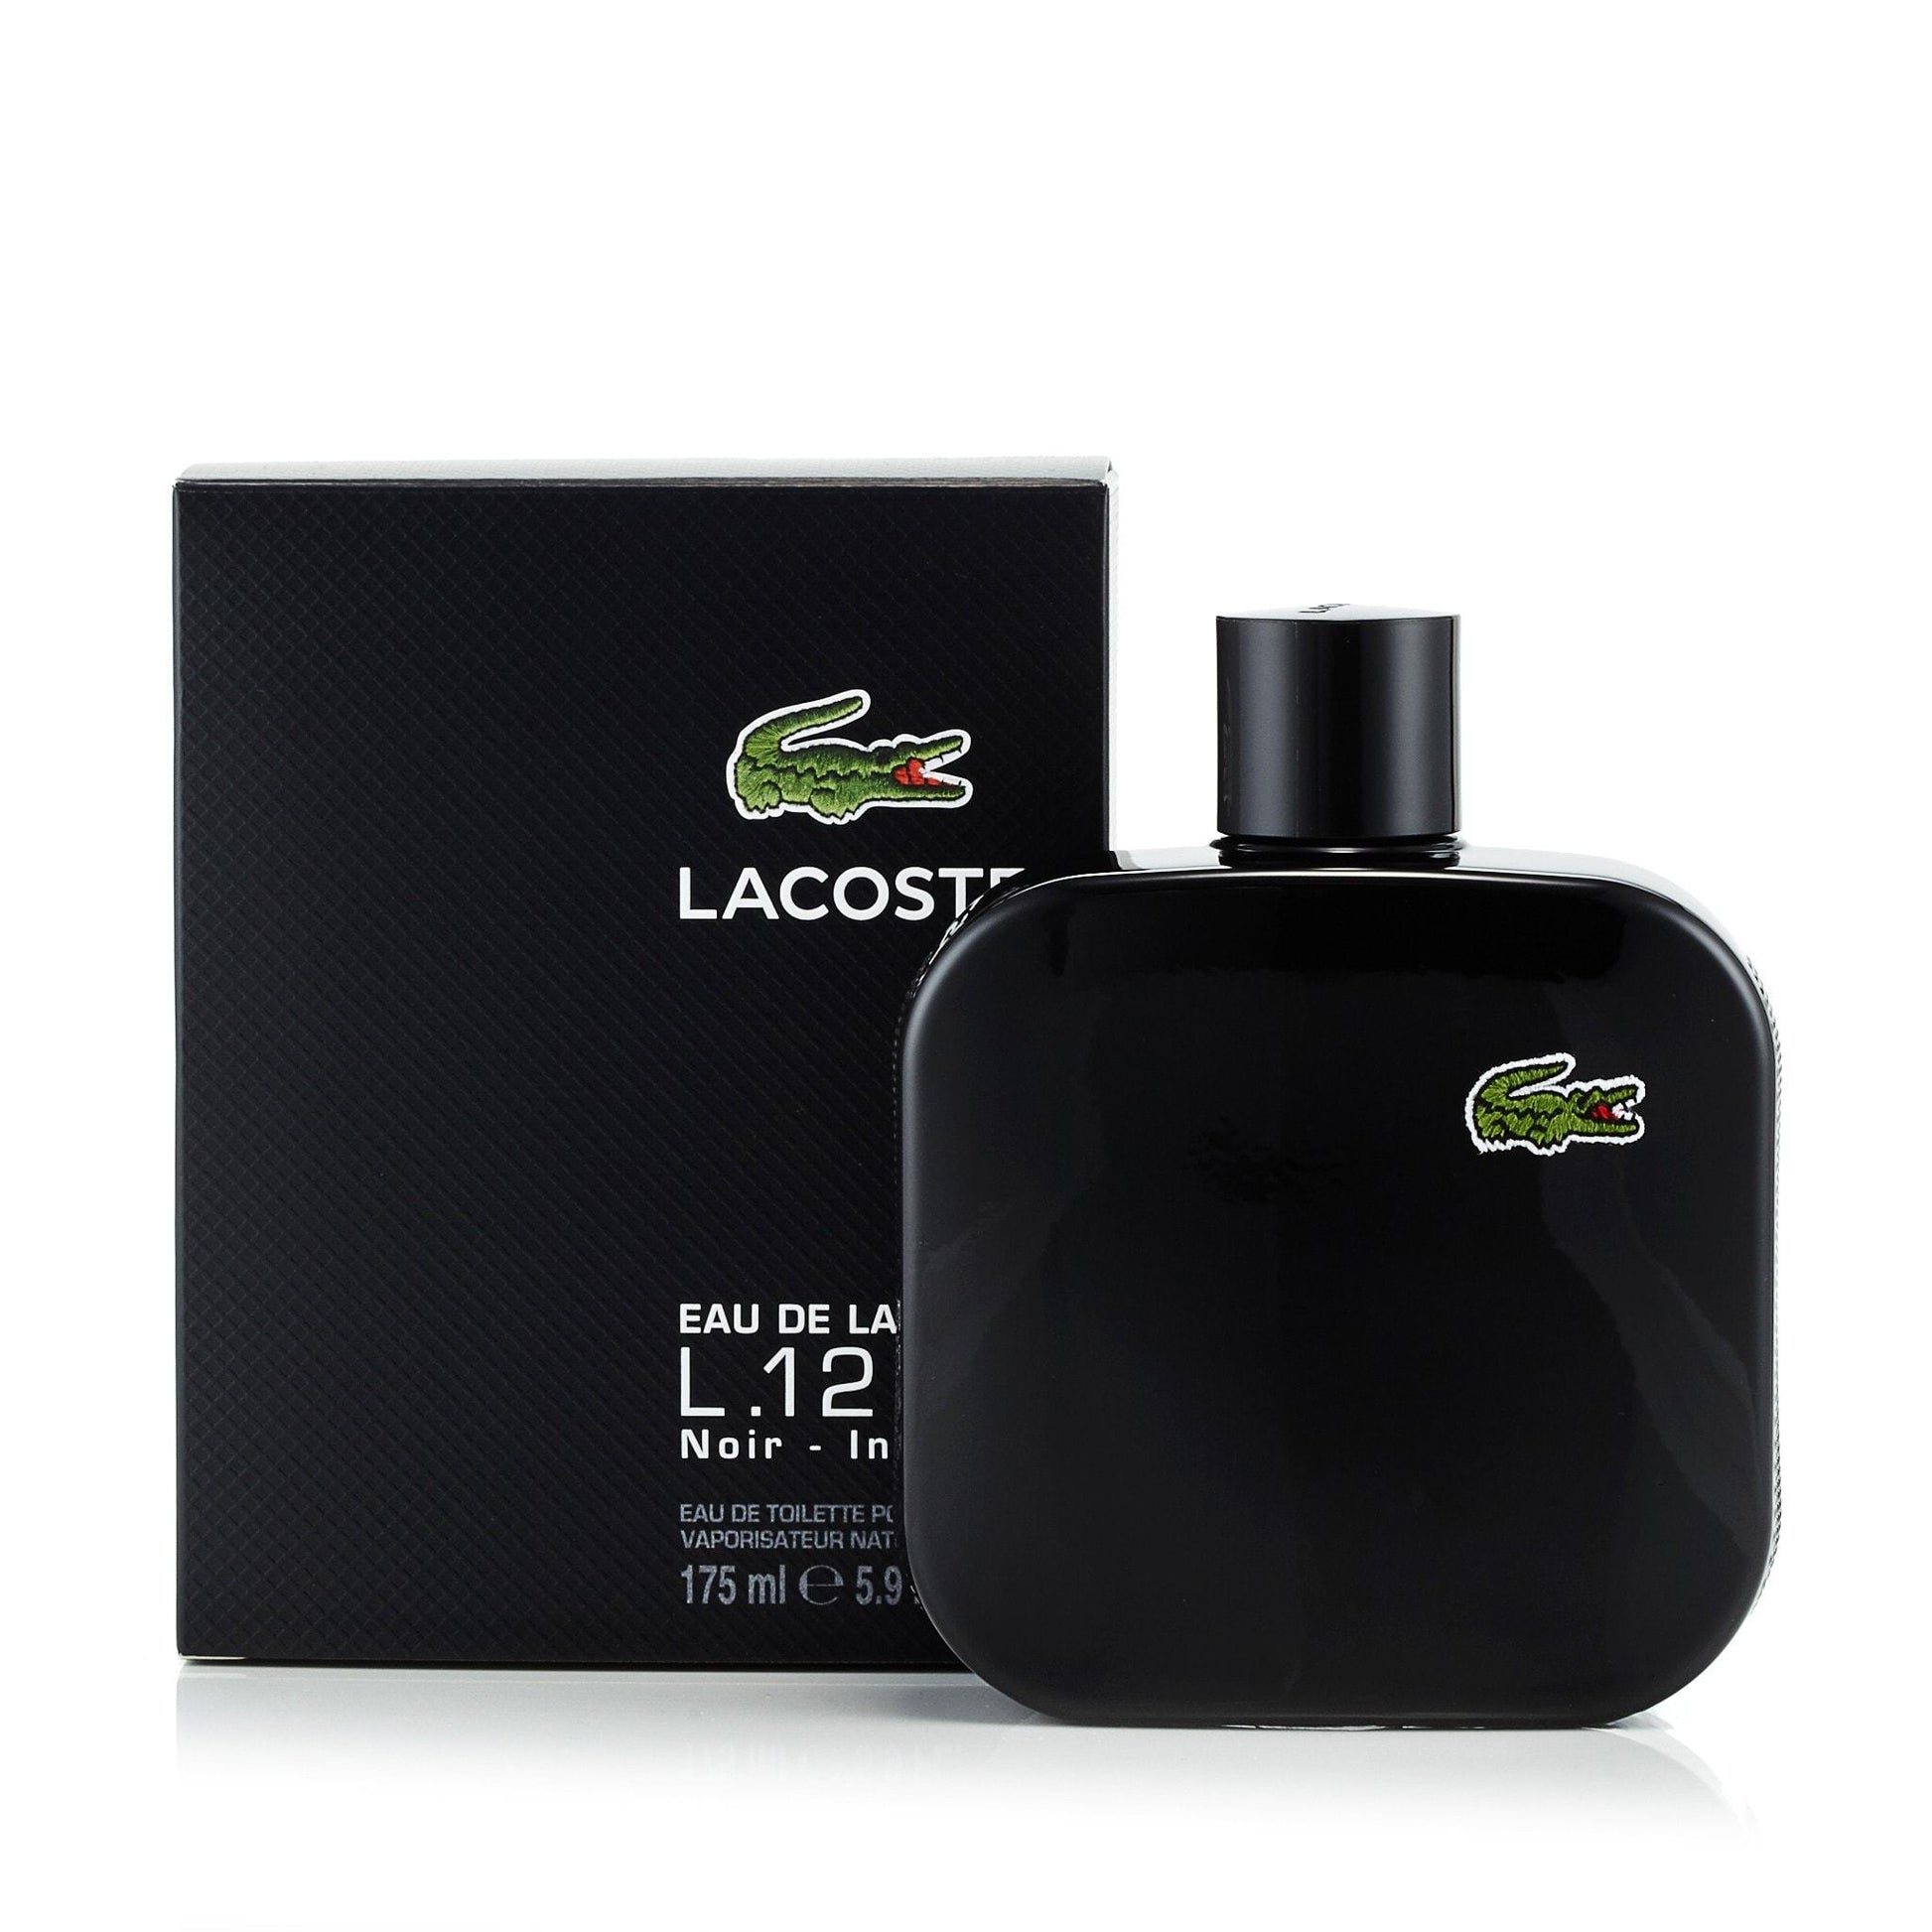 L.12.12 Noir Eau de Toilette Spray for Men by Lacoste, Product image 9